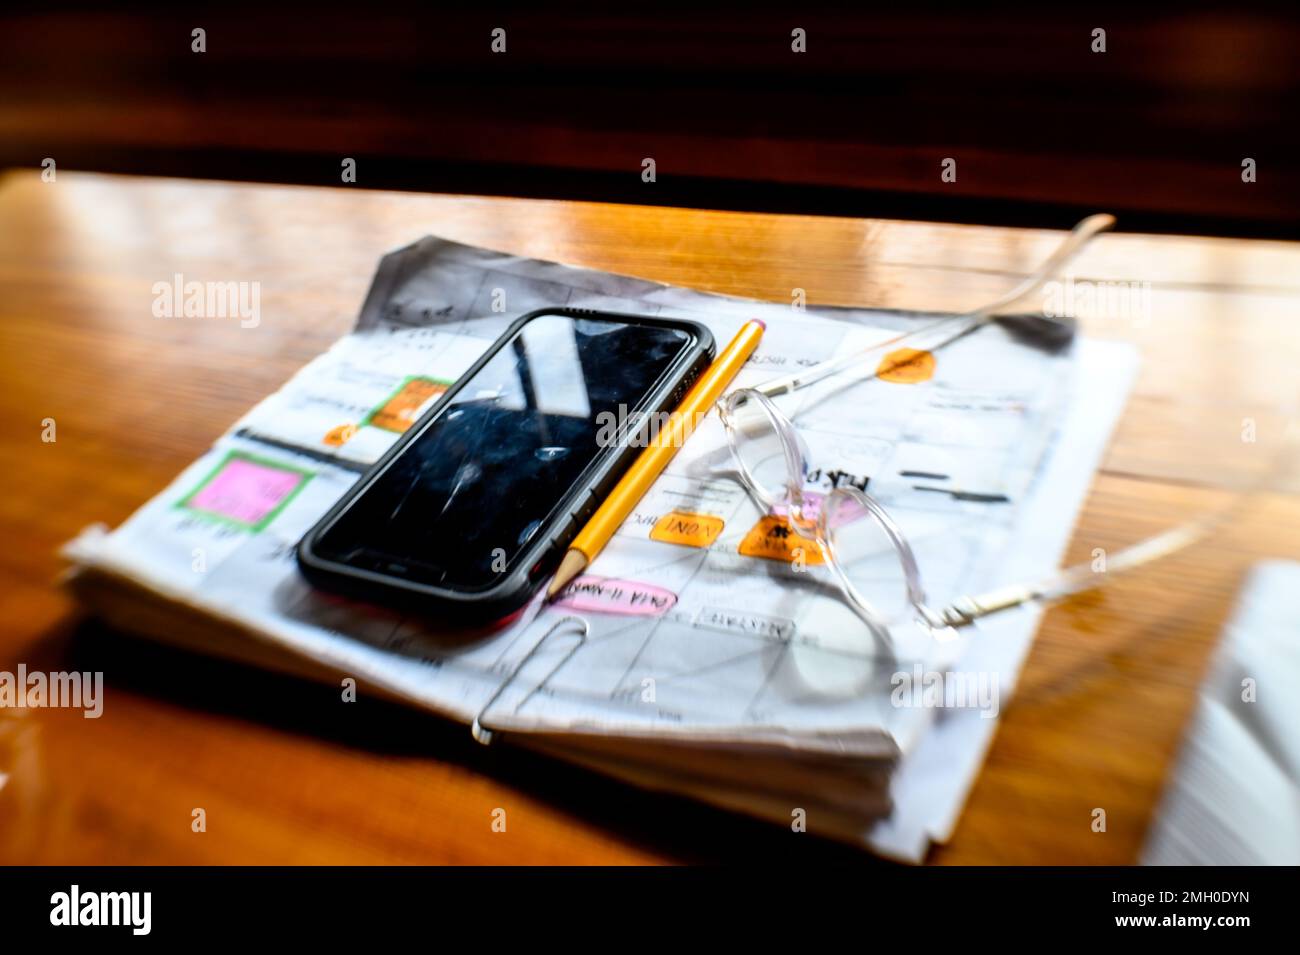 Un téléphone portable et des lunettes en haut des pages d'un calendrier Banque D'Images